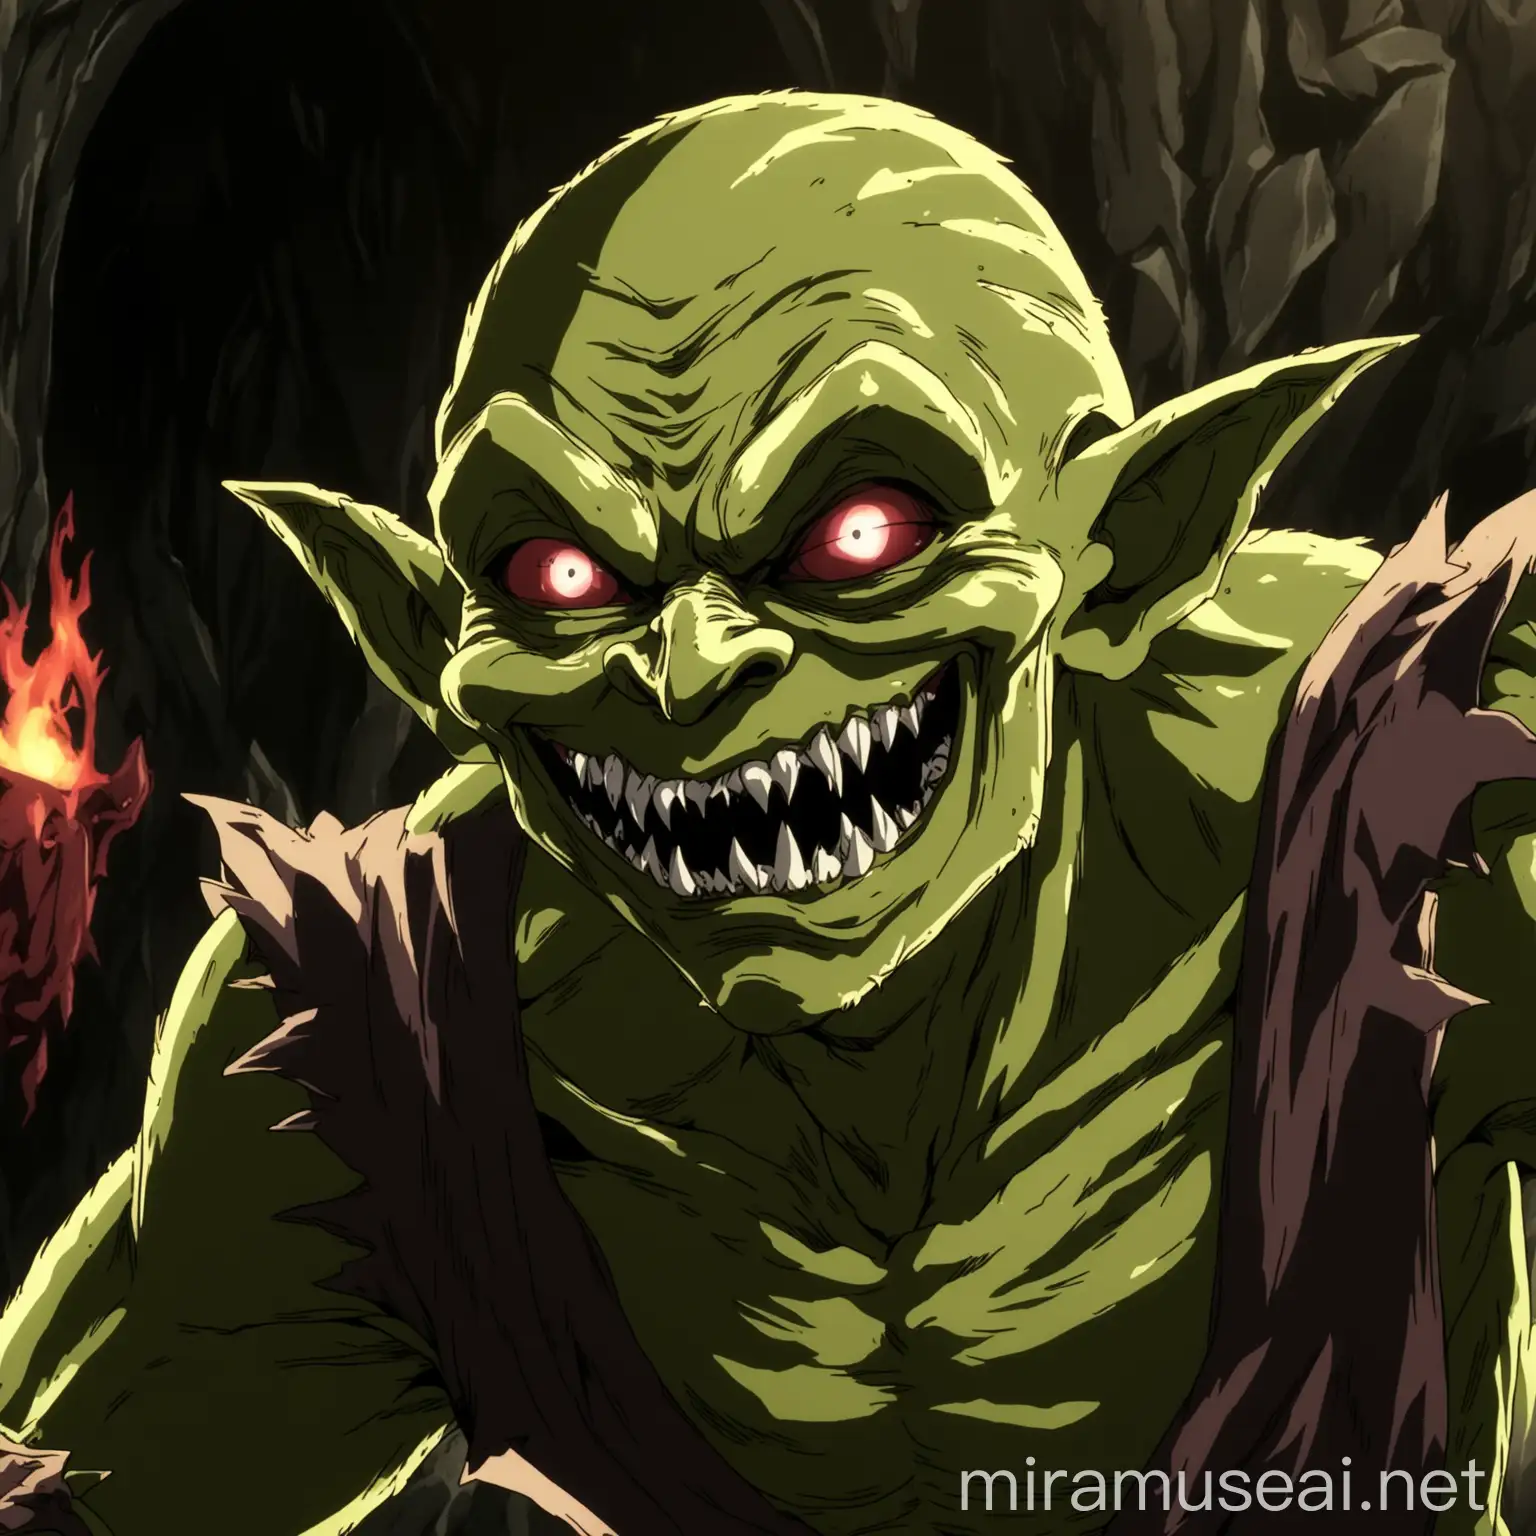 an evil goblin. in anime